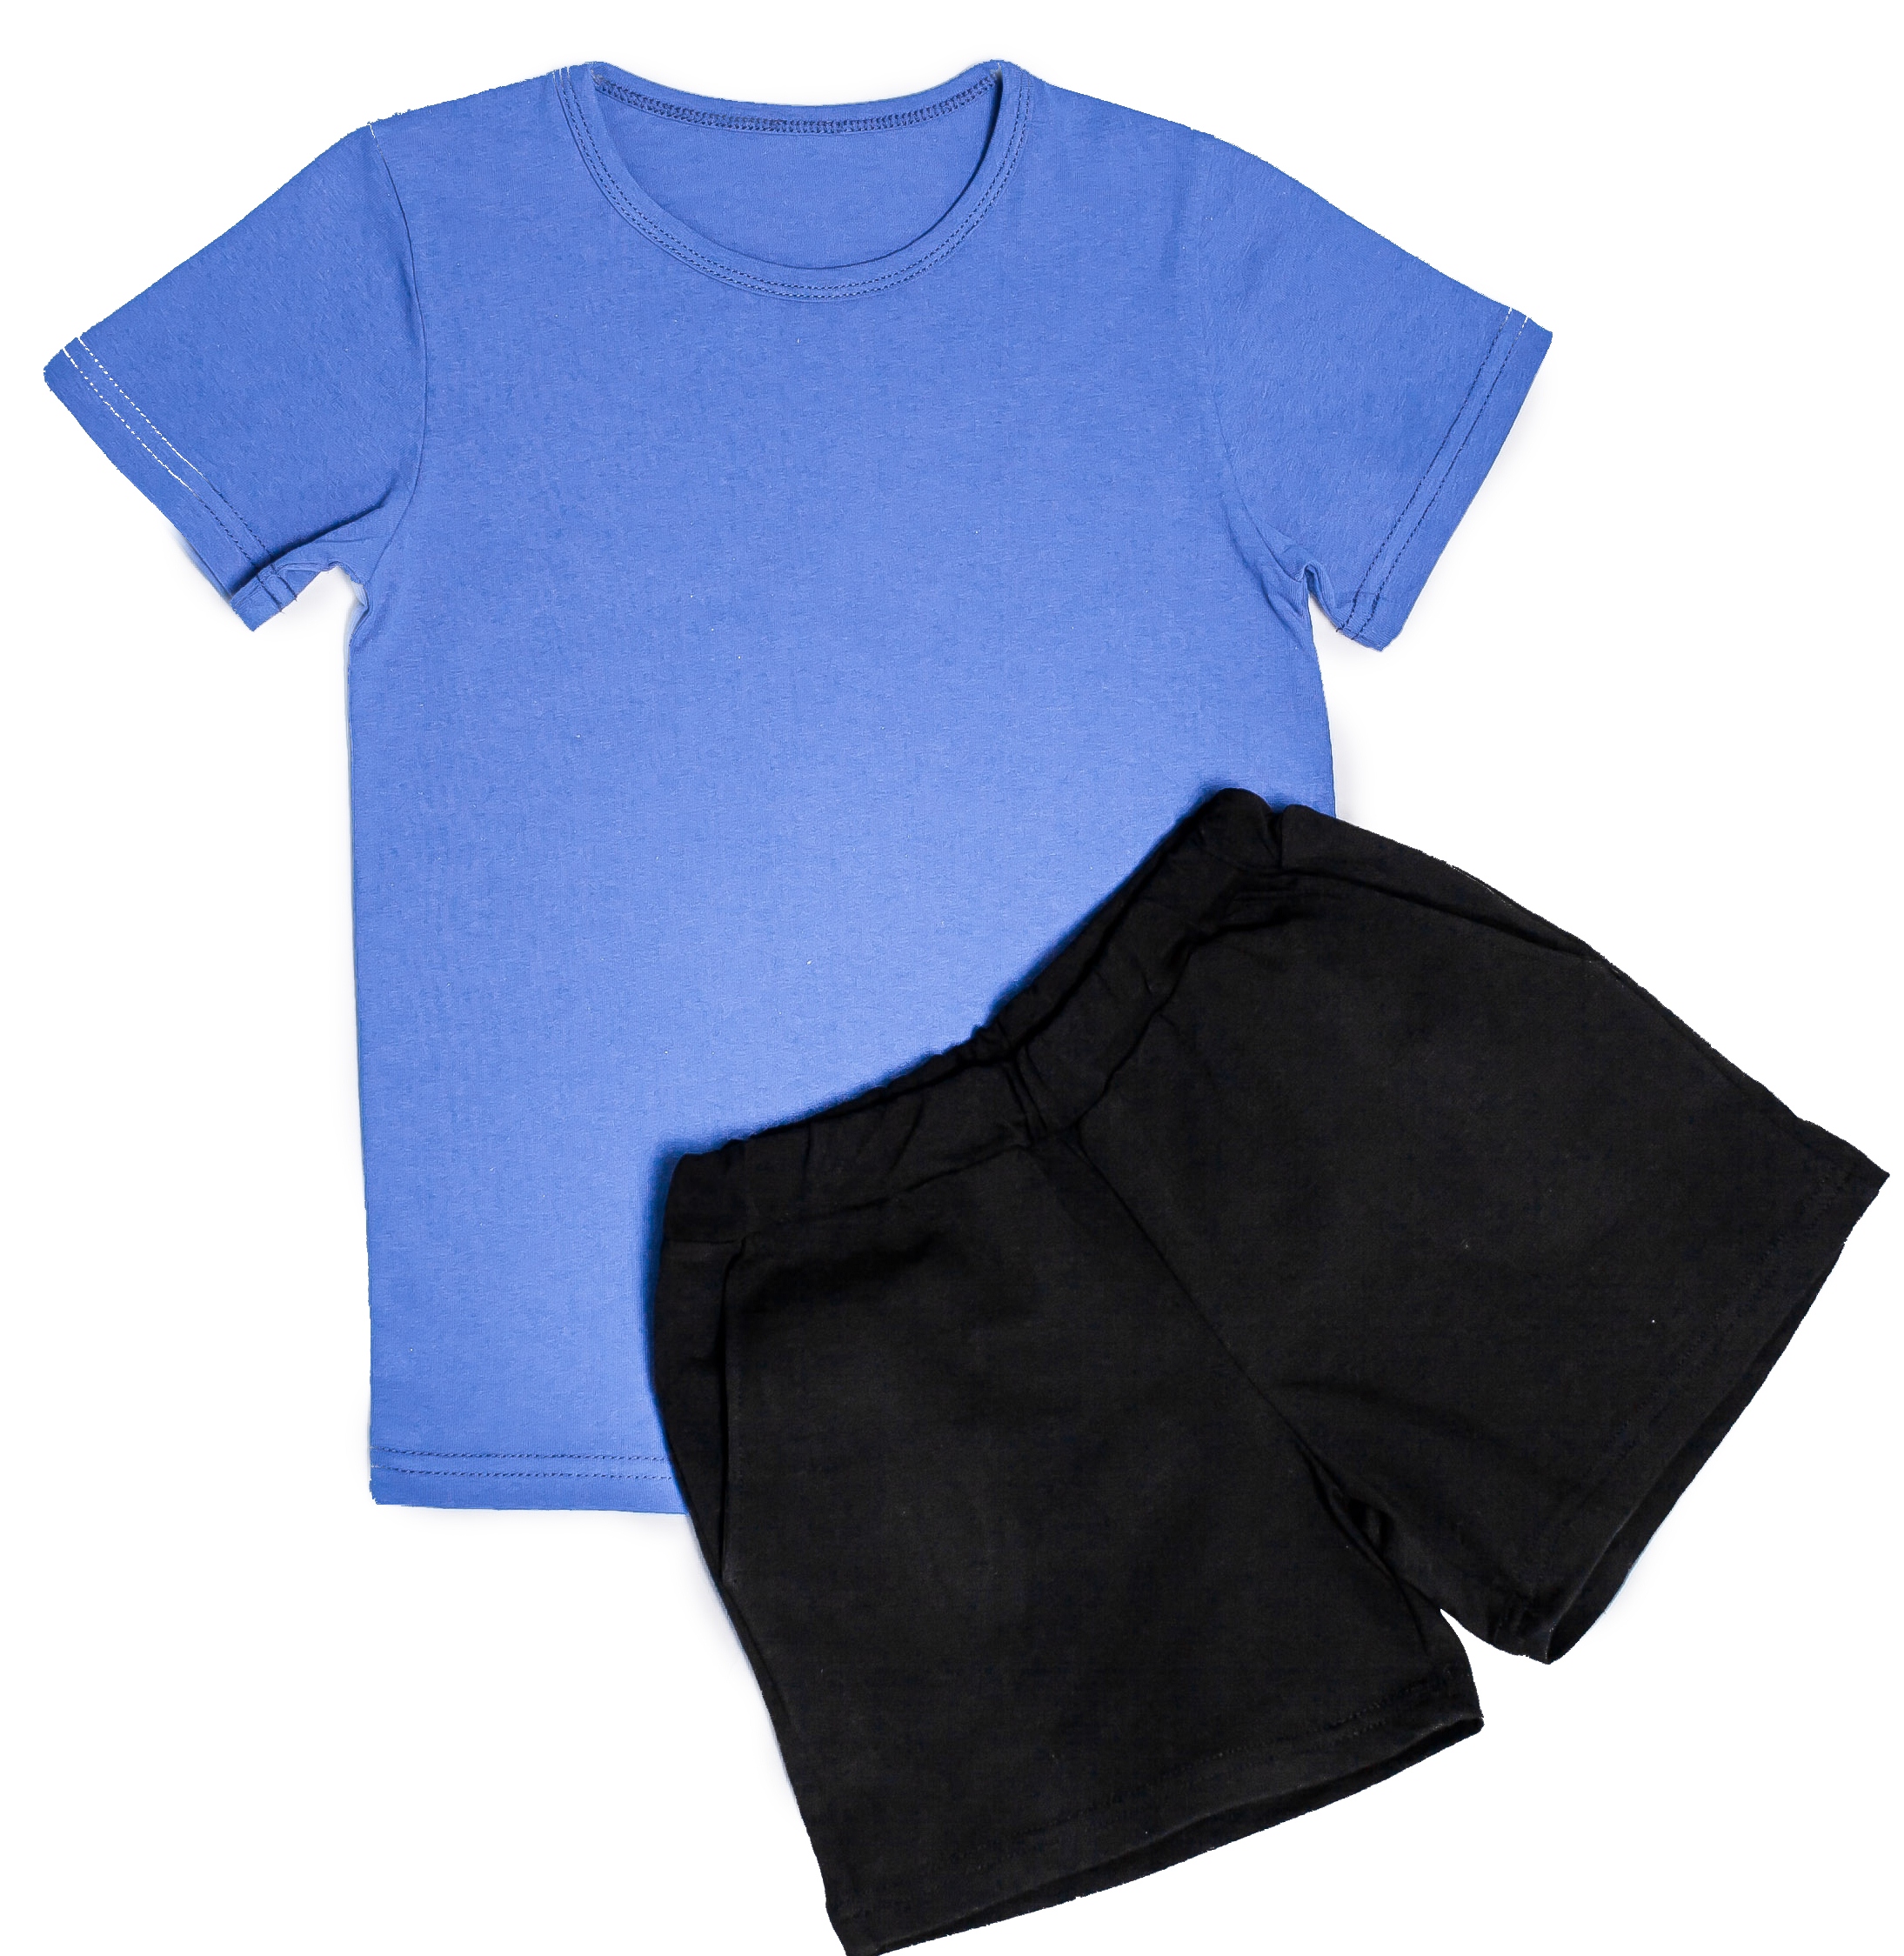 Футболка шорты можно. Детские шорты для физкультуры. Чёрные шорты для мальчика на физкультуру. Синяя футболка черные шорты. Детские спортивные шорты и футболка.